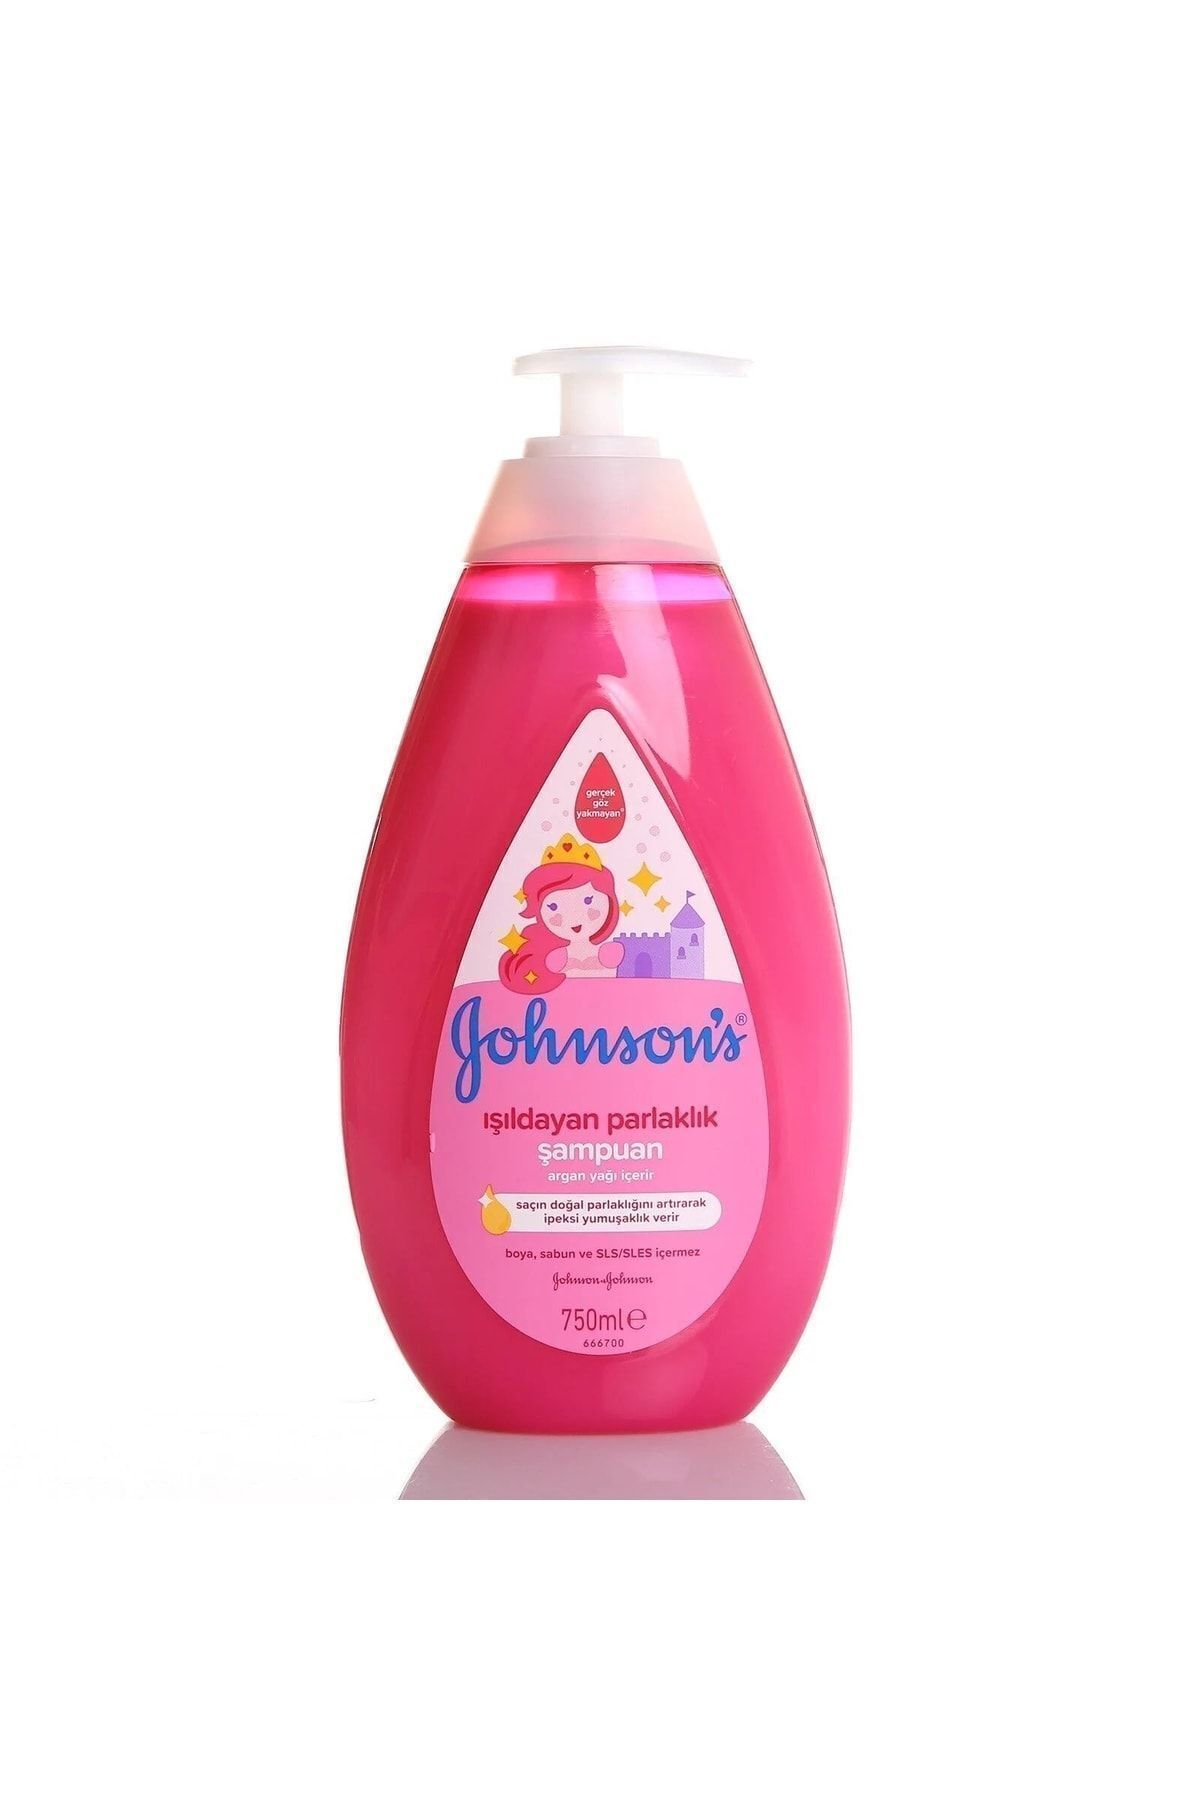 Johnson's Baby Johnson's Baby Işıldayan Parlaklık Bebe Şampuanı 750ml